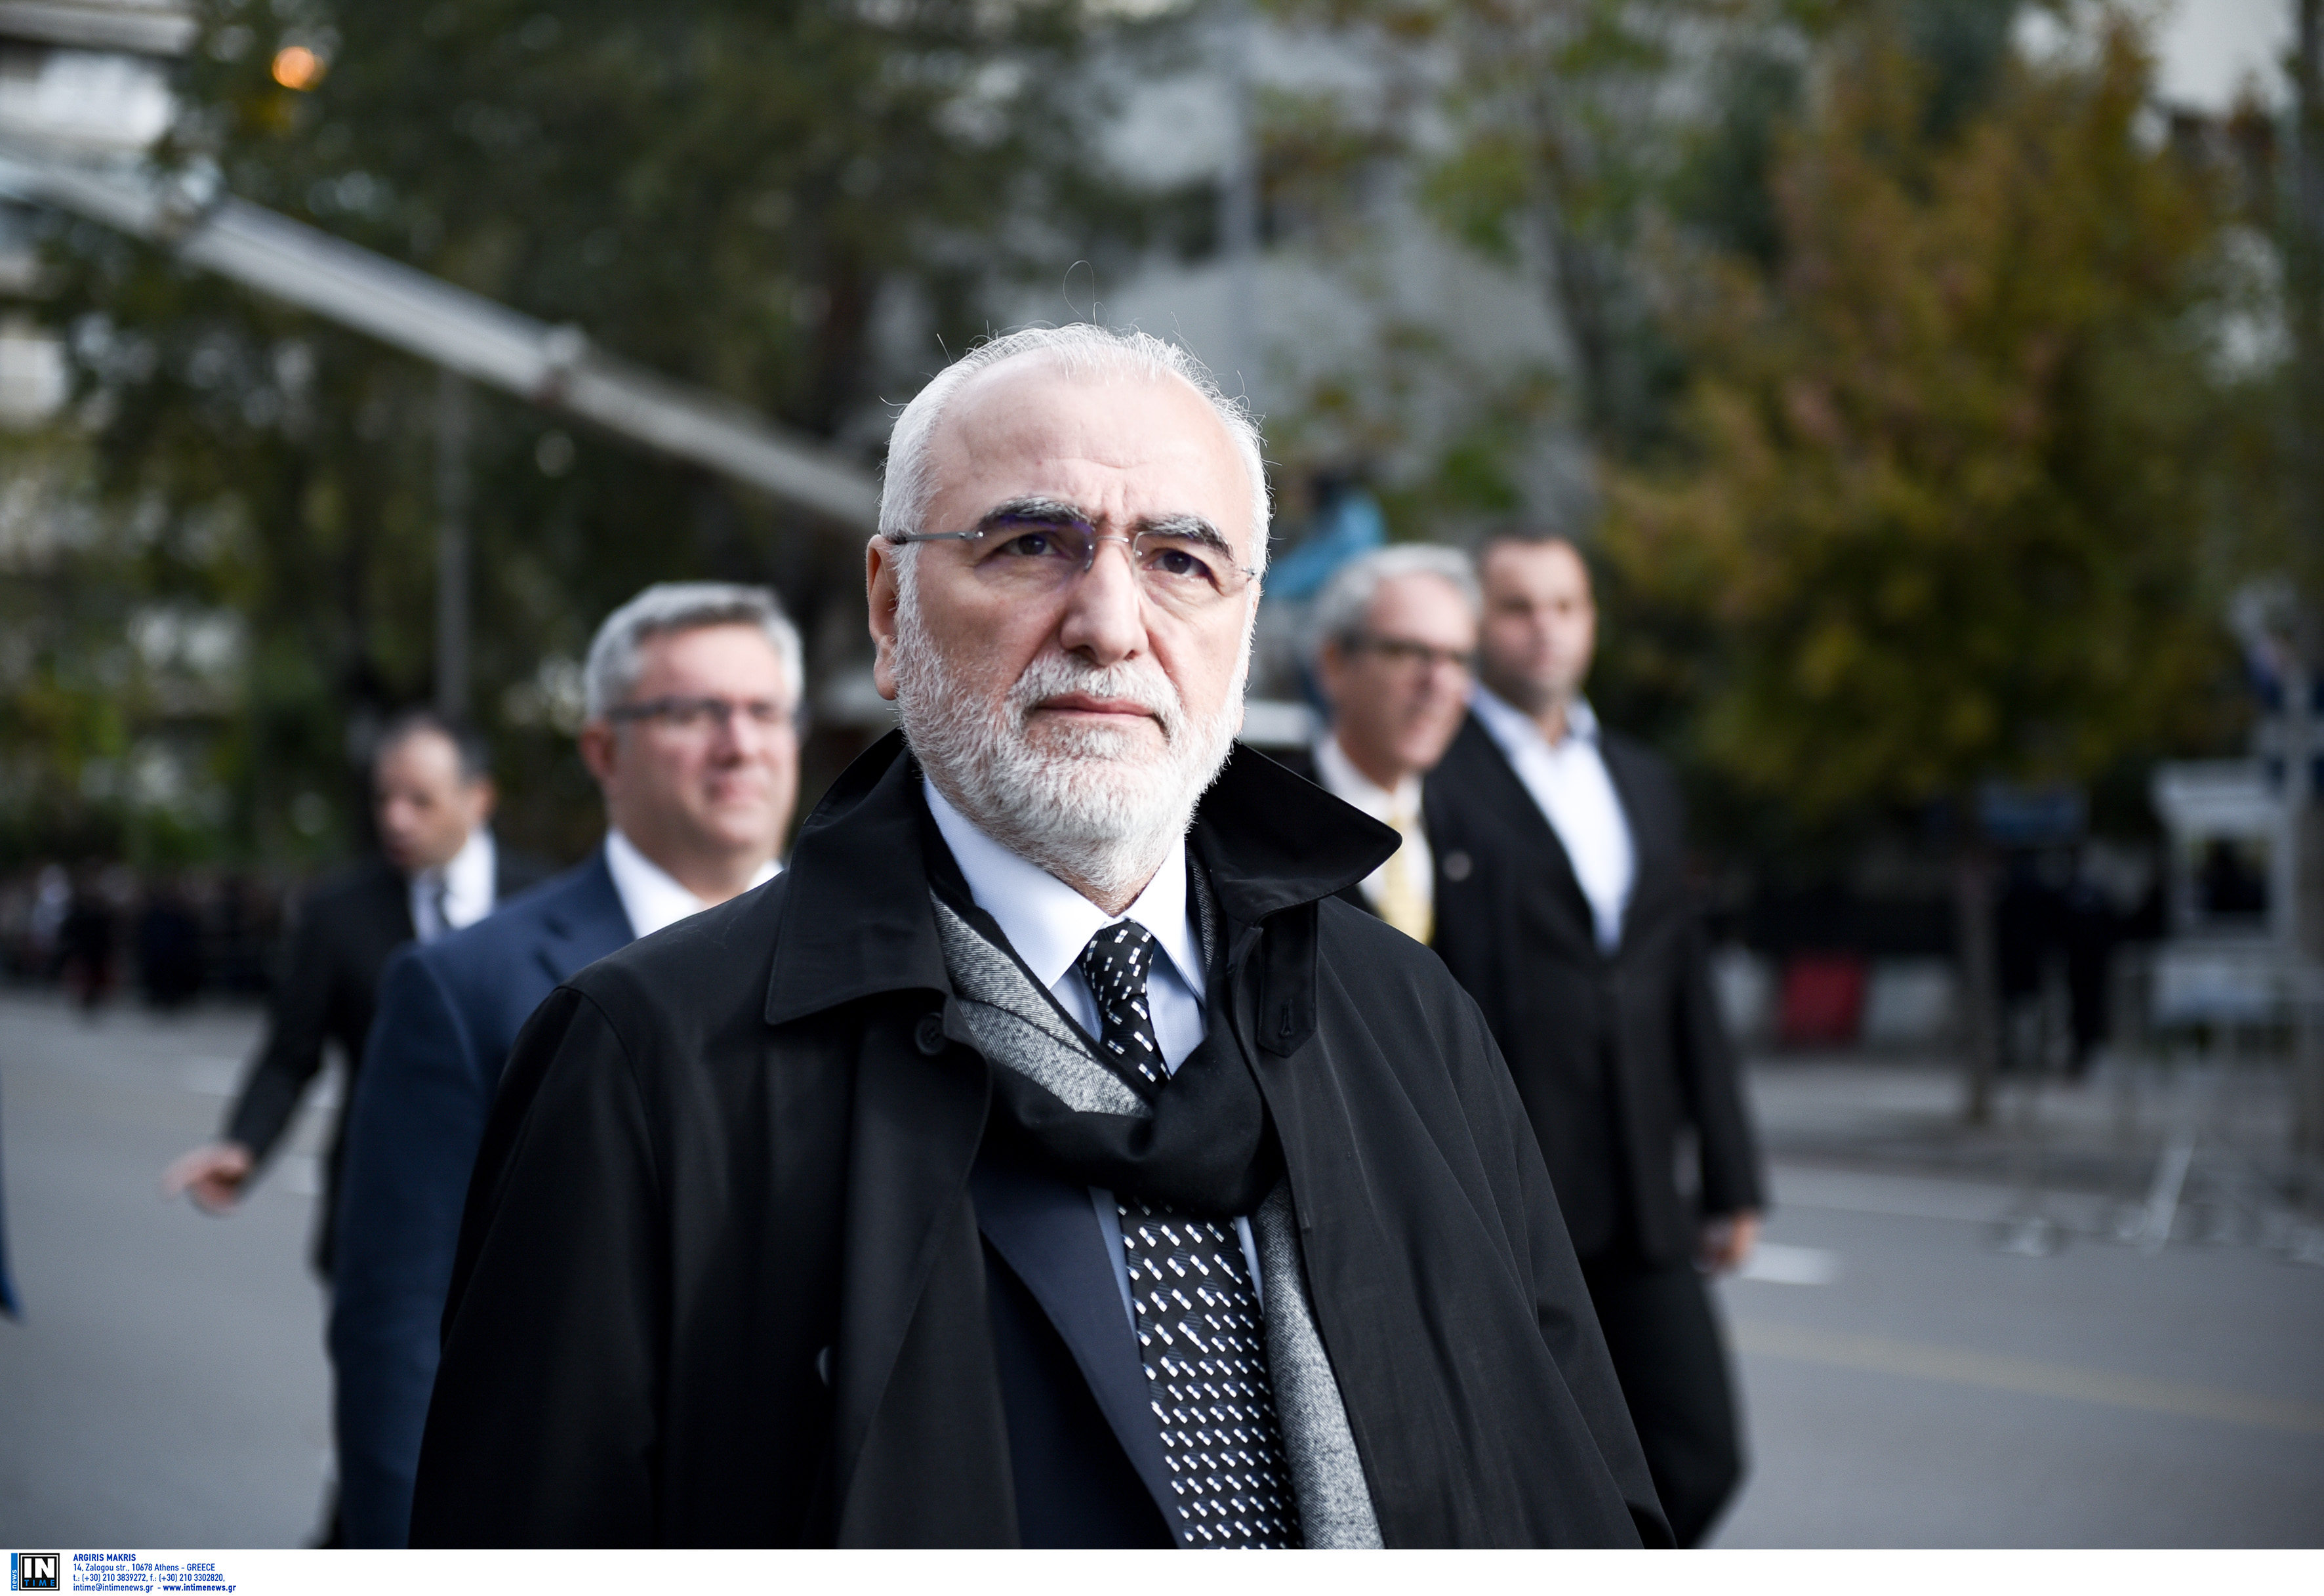 Σε δίκη παραπέμπεται ο Ιβάν Σαββίδης για την εισβολή στην Τούμπα